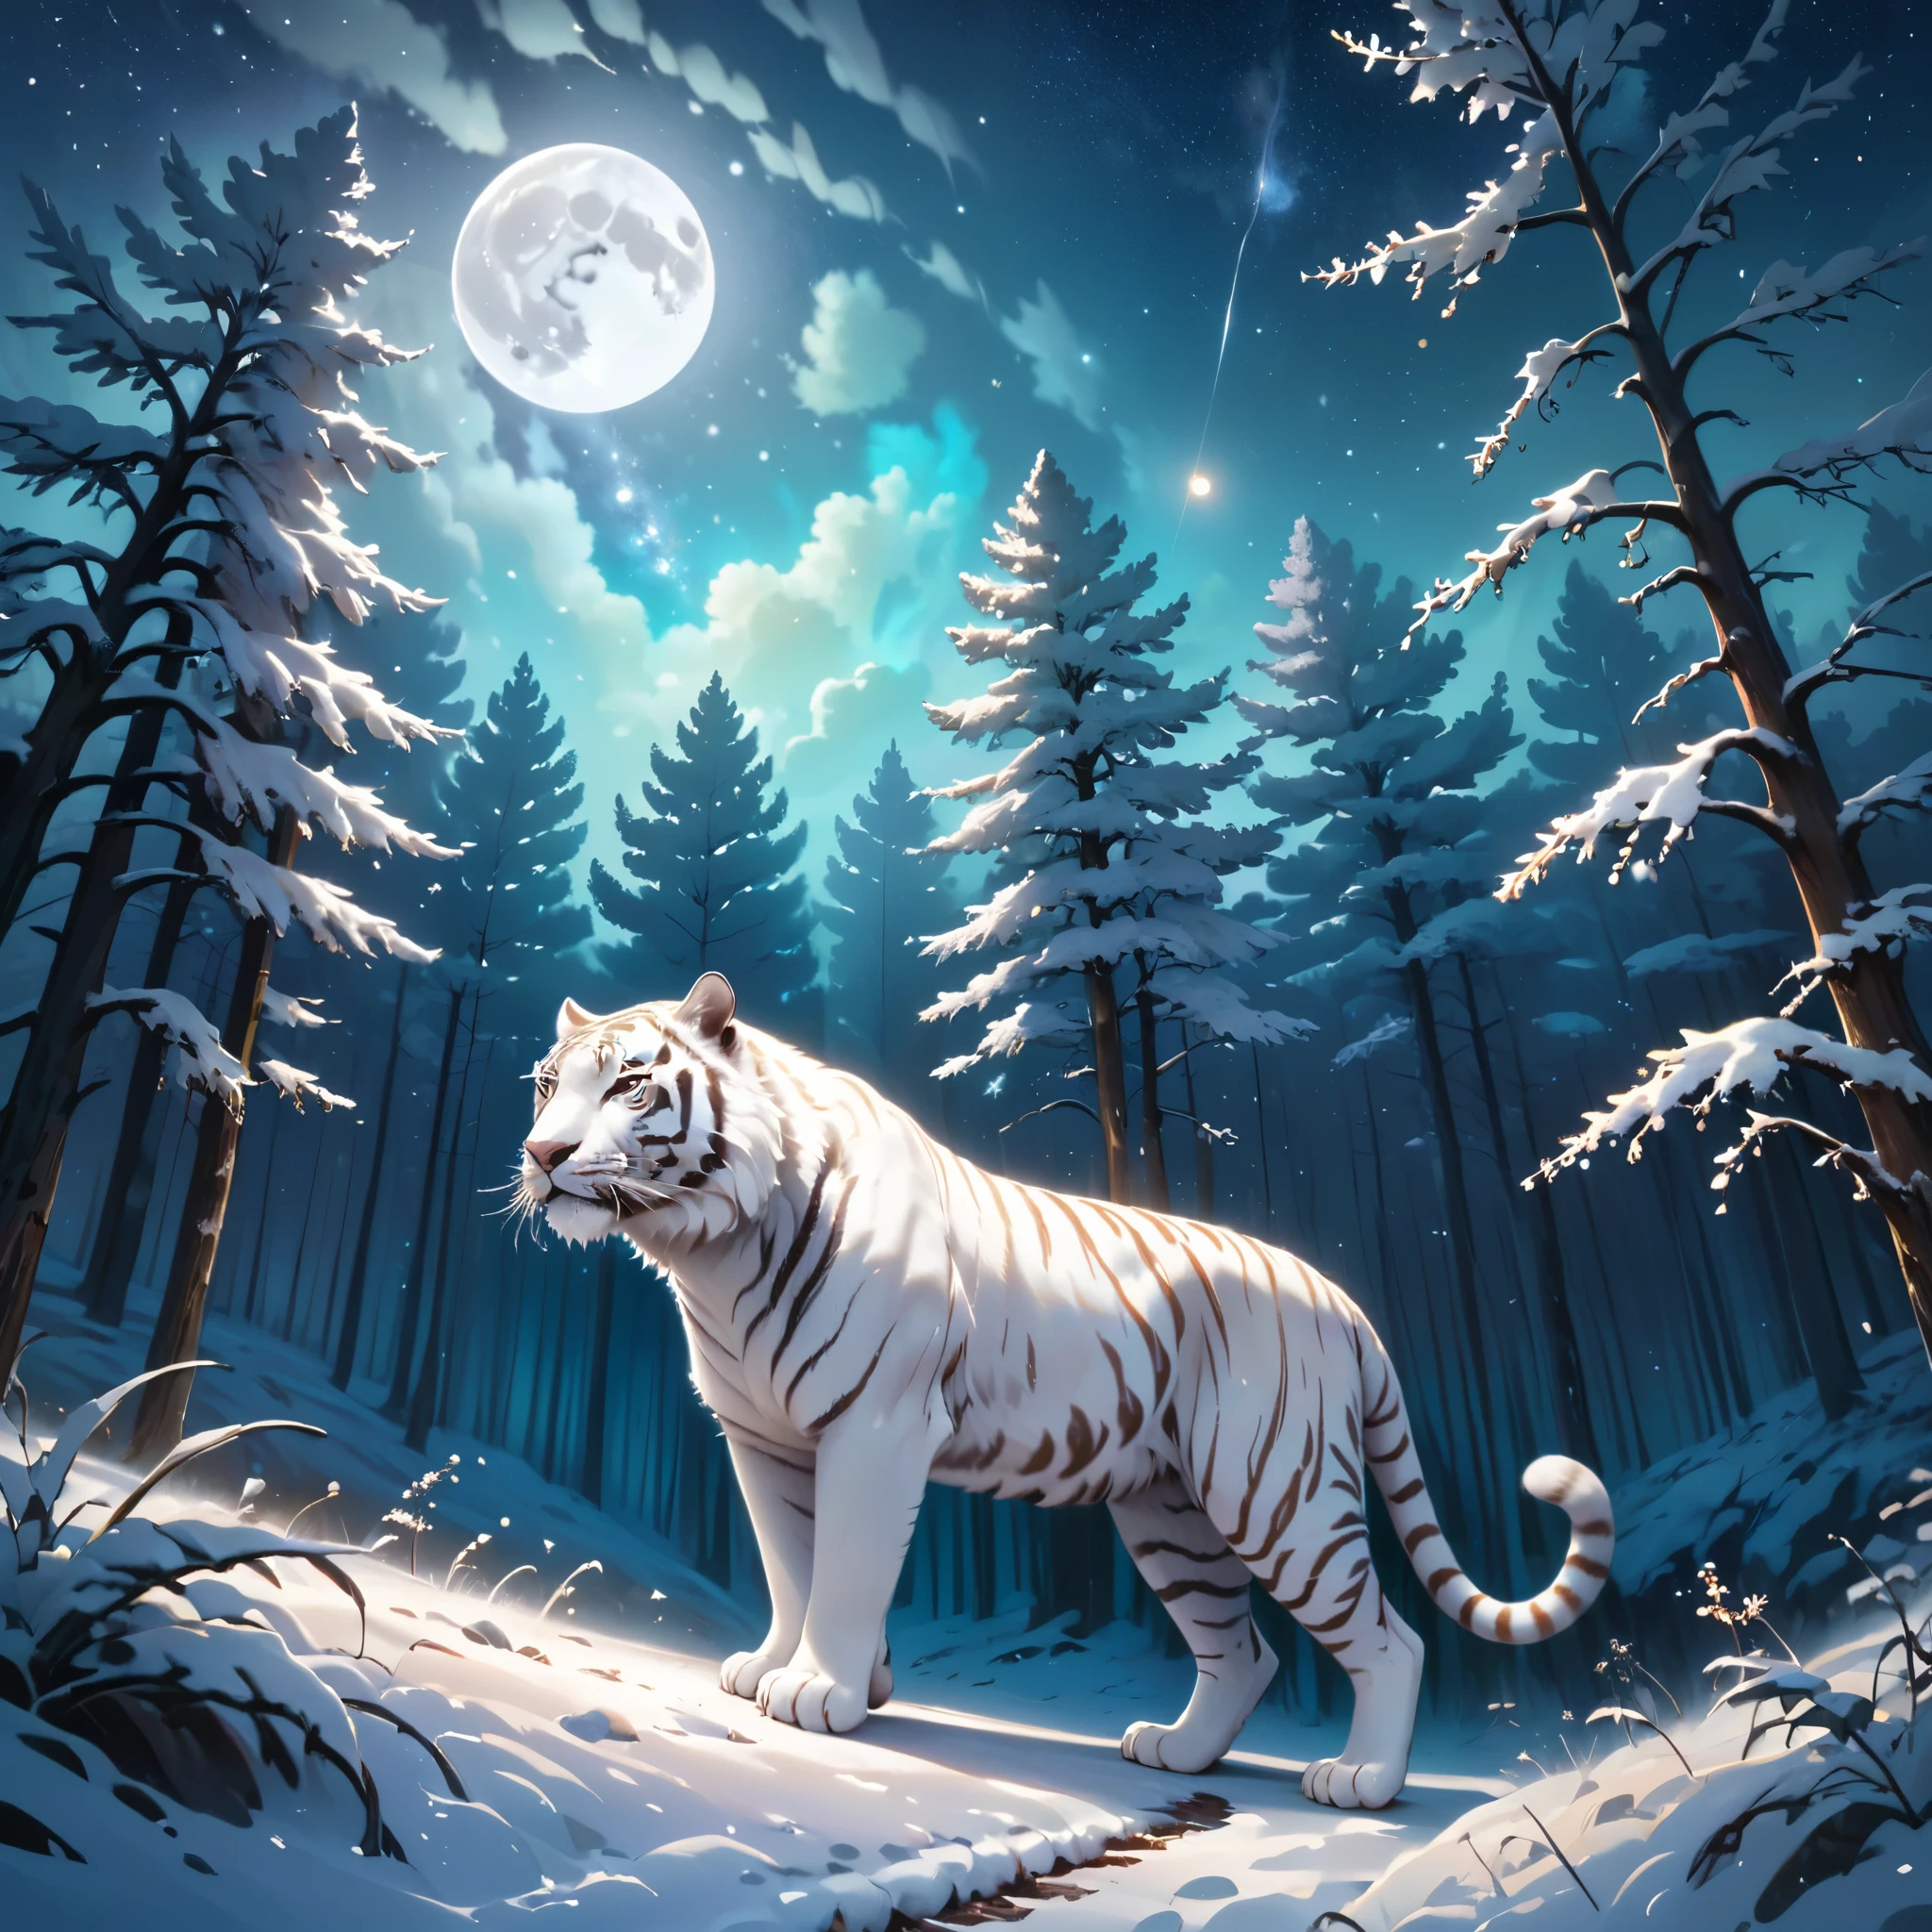 Extensa fotografia de paisagem (uma vista de baixo mostrando o céu acima e uma floresta aberta abaixo), um tigre branco em um caminho olhando a paisagem, tigre siberiano branco, pelo cheio, Pelo branco (partícula de luz ao redor do tigre), pele de tofu, cenário noturno, (lua cheia: 1.2), (estrelas cadentes: 0.9), (nebula: 1.3), (Fonte de luz quente: 1.2), (vaga-lume: 1.2), ( Floco de neve: 1.0), (neve na árvore) (obra de arte: 1.2), (melhor qualidade), 4K, ultra detalhado, (composição dinâmica: 1.4), Detalhes muito detalhados e coloridos, (cores iridescentes: 1 ,2), (iluminação brilhante, iluminação ambiente), sonhadores, mágico, (sozinho: ​​1,2)